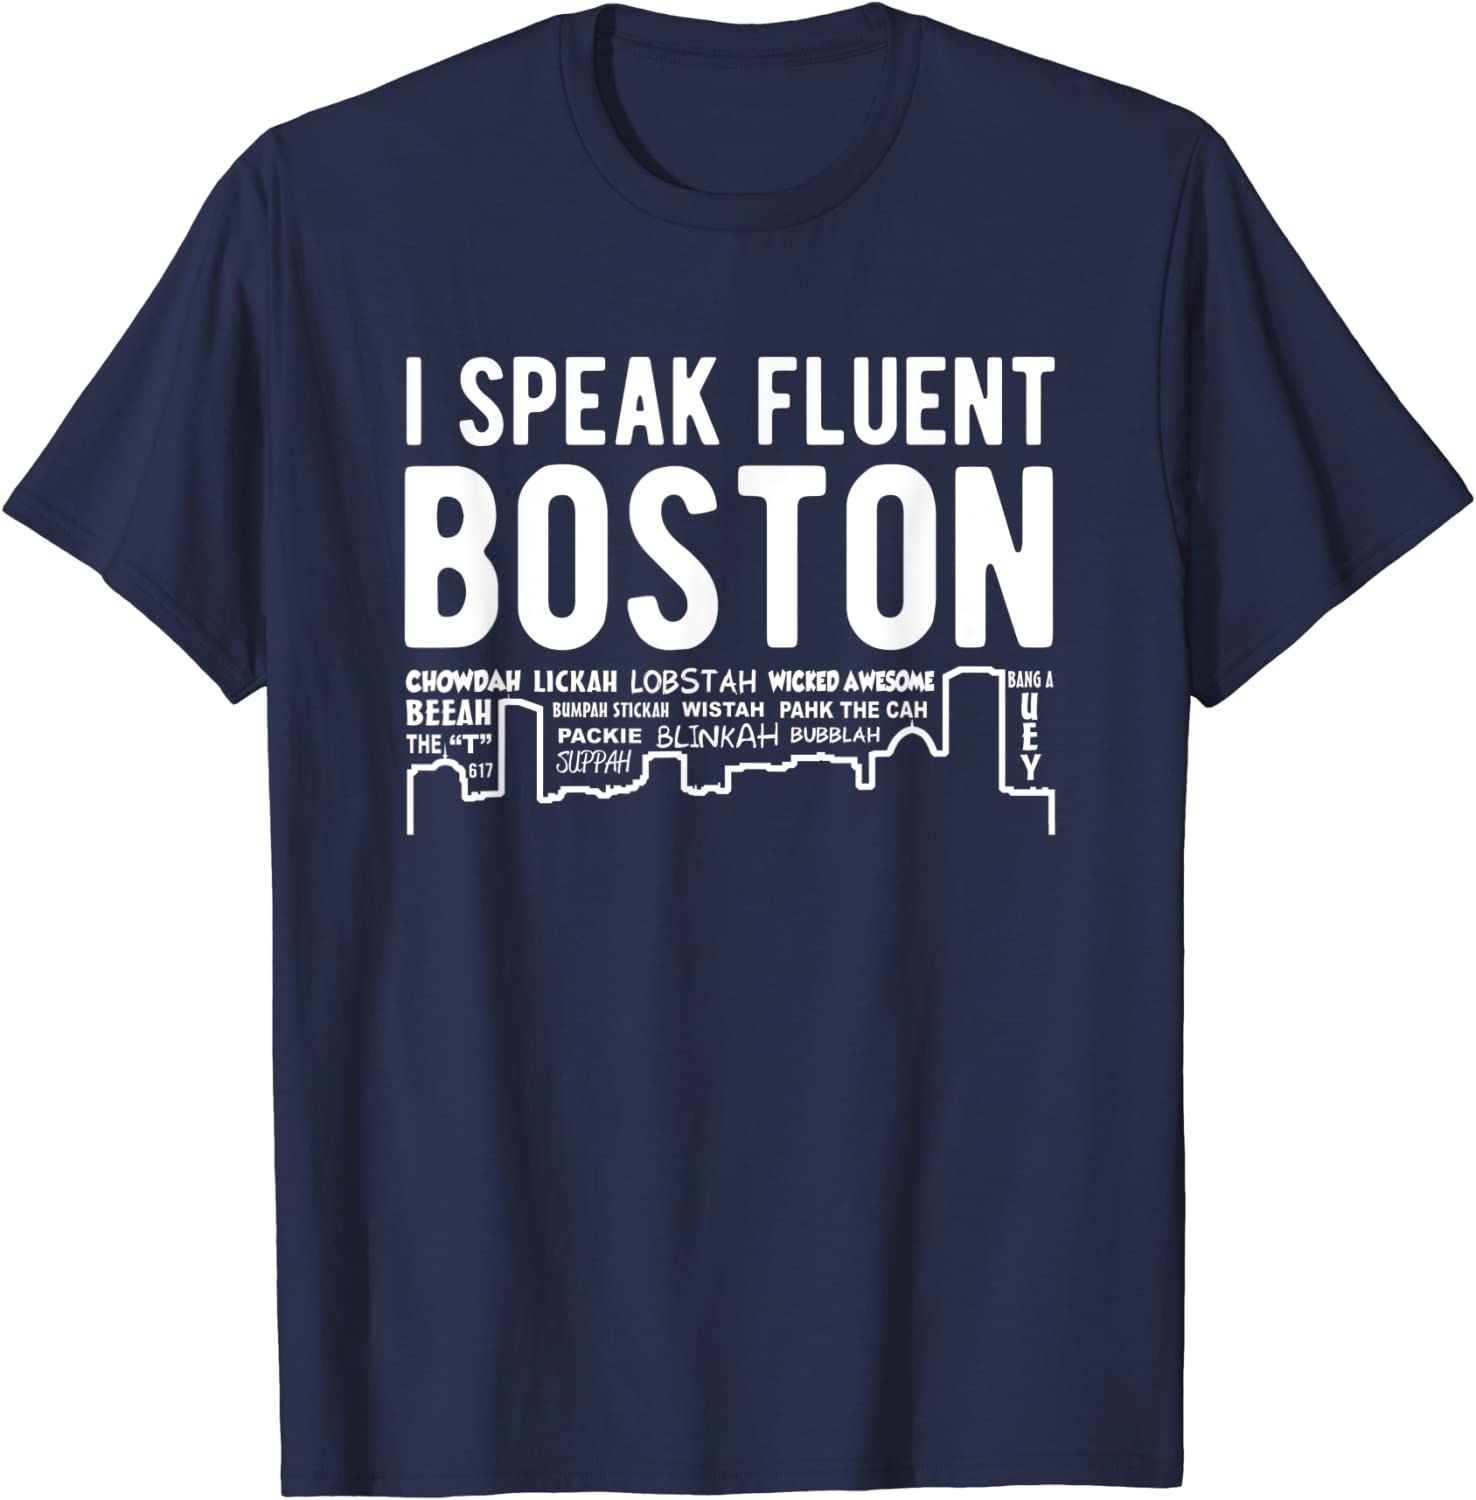 I speak fluent Boston t-shirt